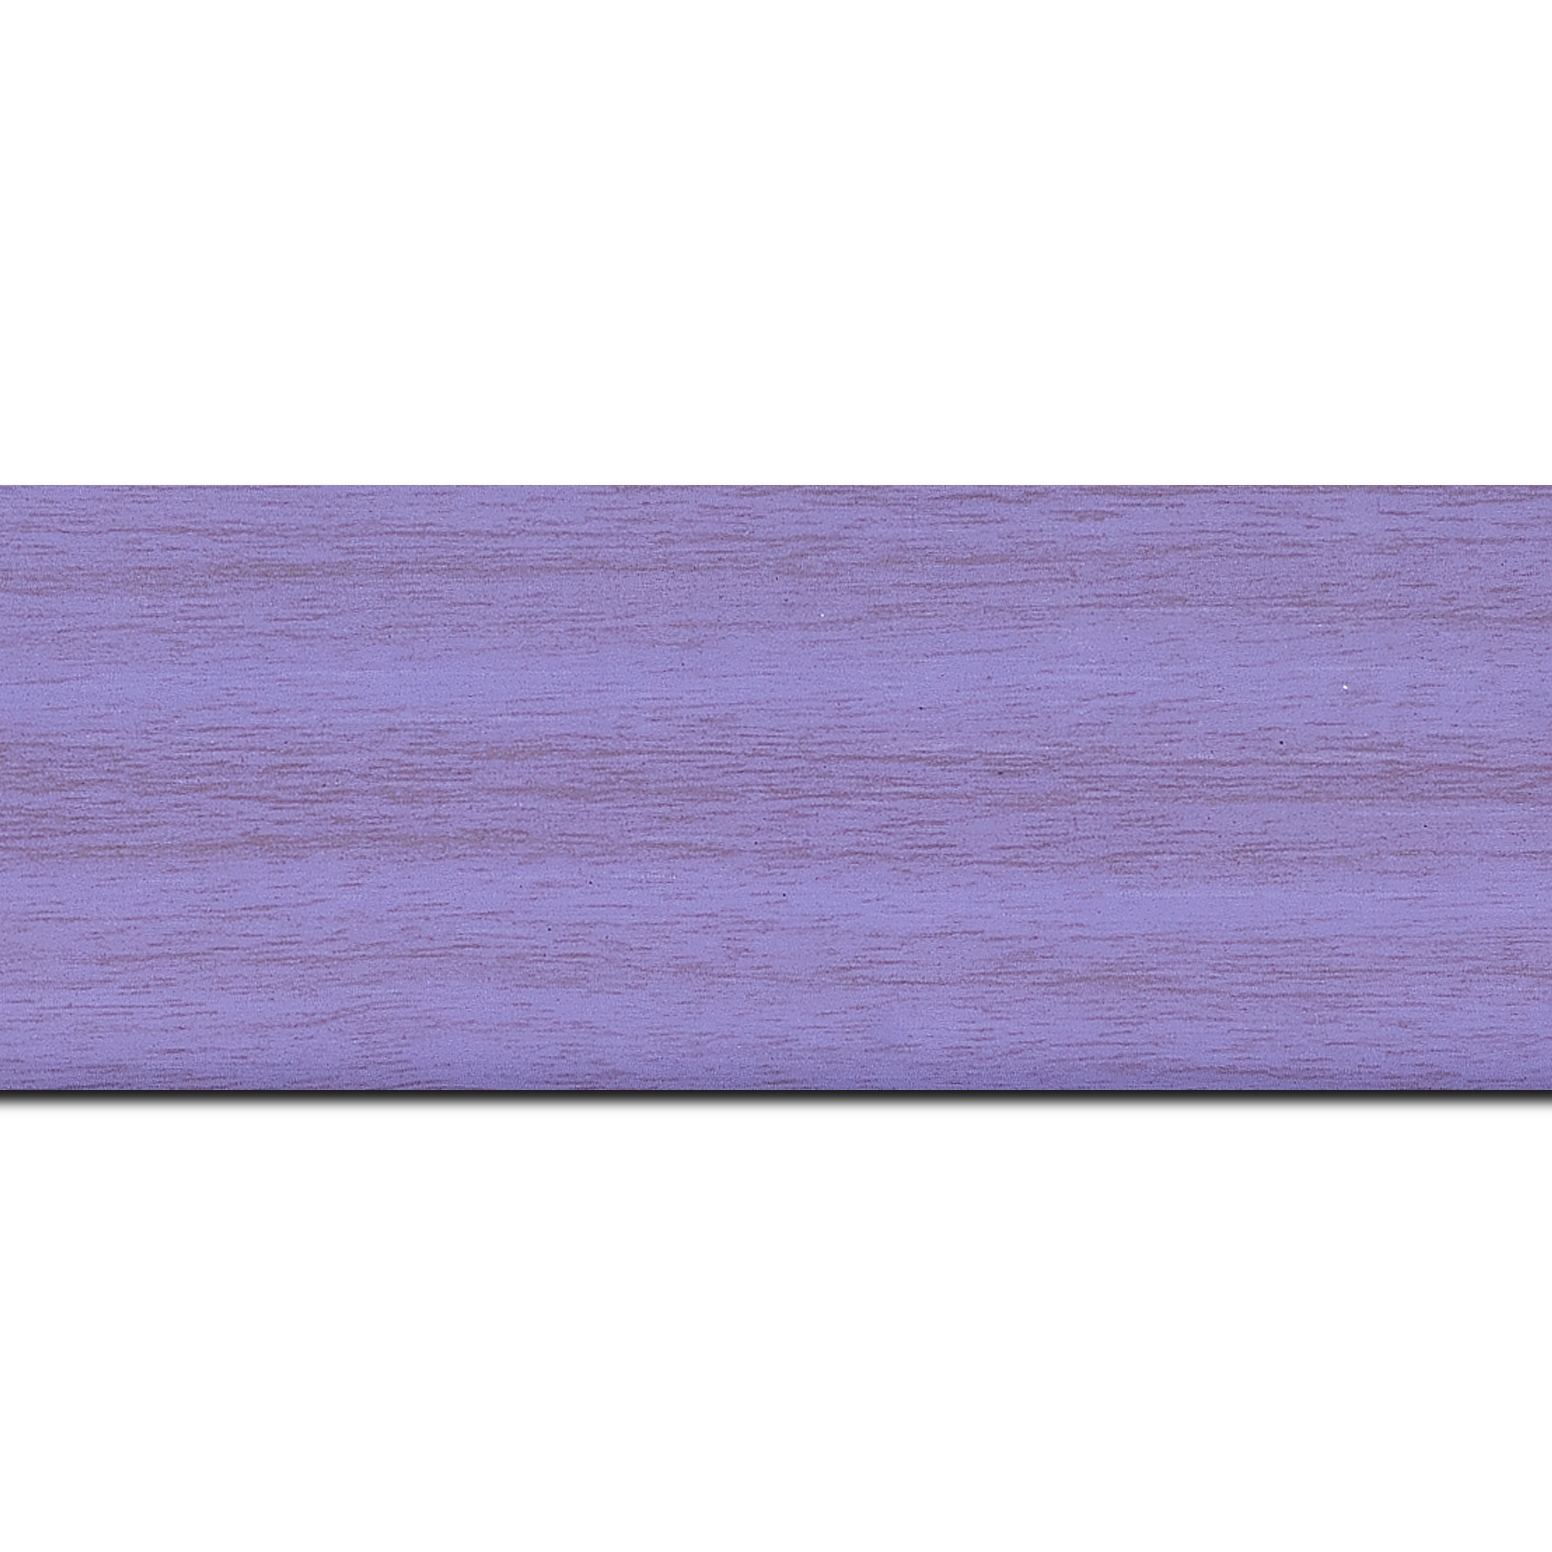 Pack par 12m, bois profil plat largeur 6cm violet satiné effet veiné ,chant extérieur du cadre de couleur noire(longueur baguette pouvant varier entre 2.40m et 3m selon arrivage des bois)